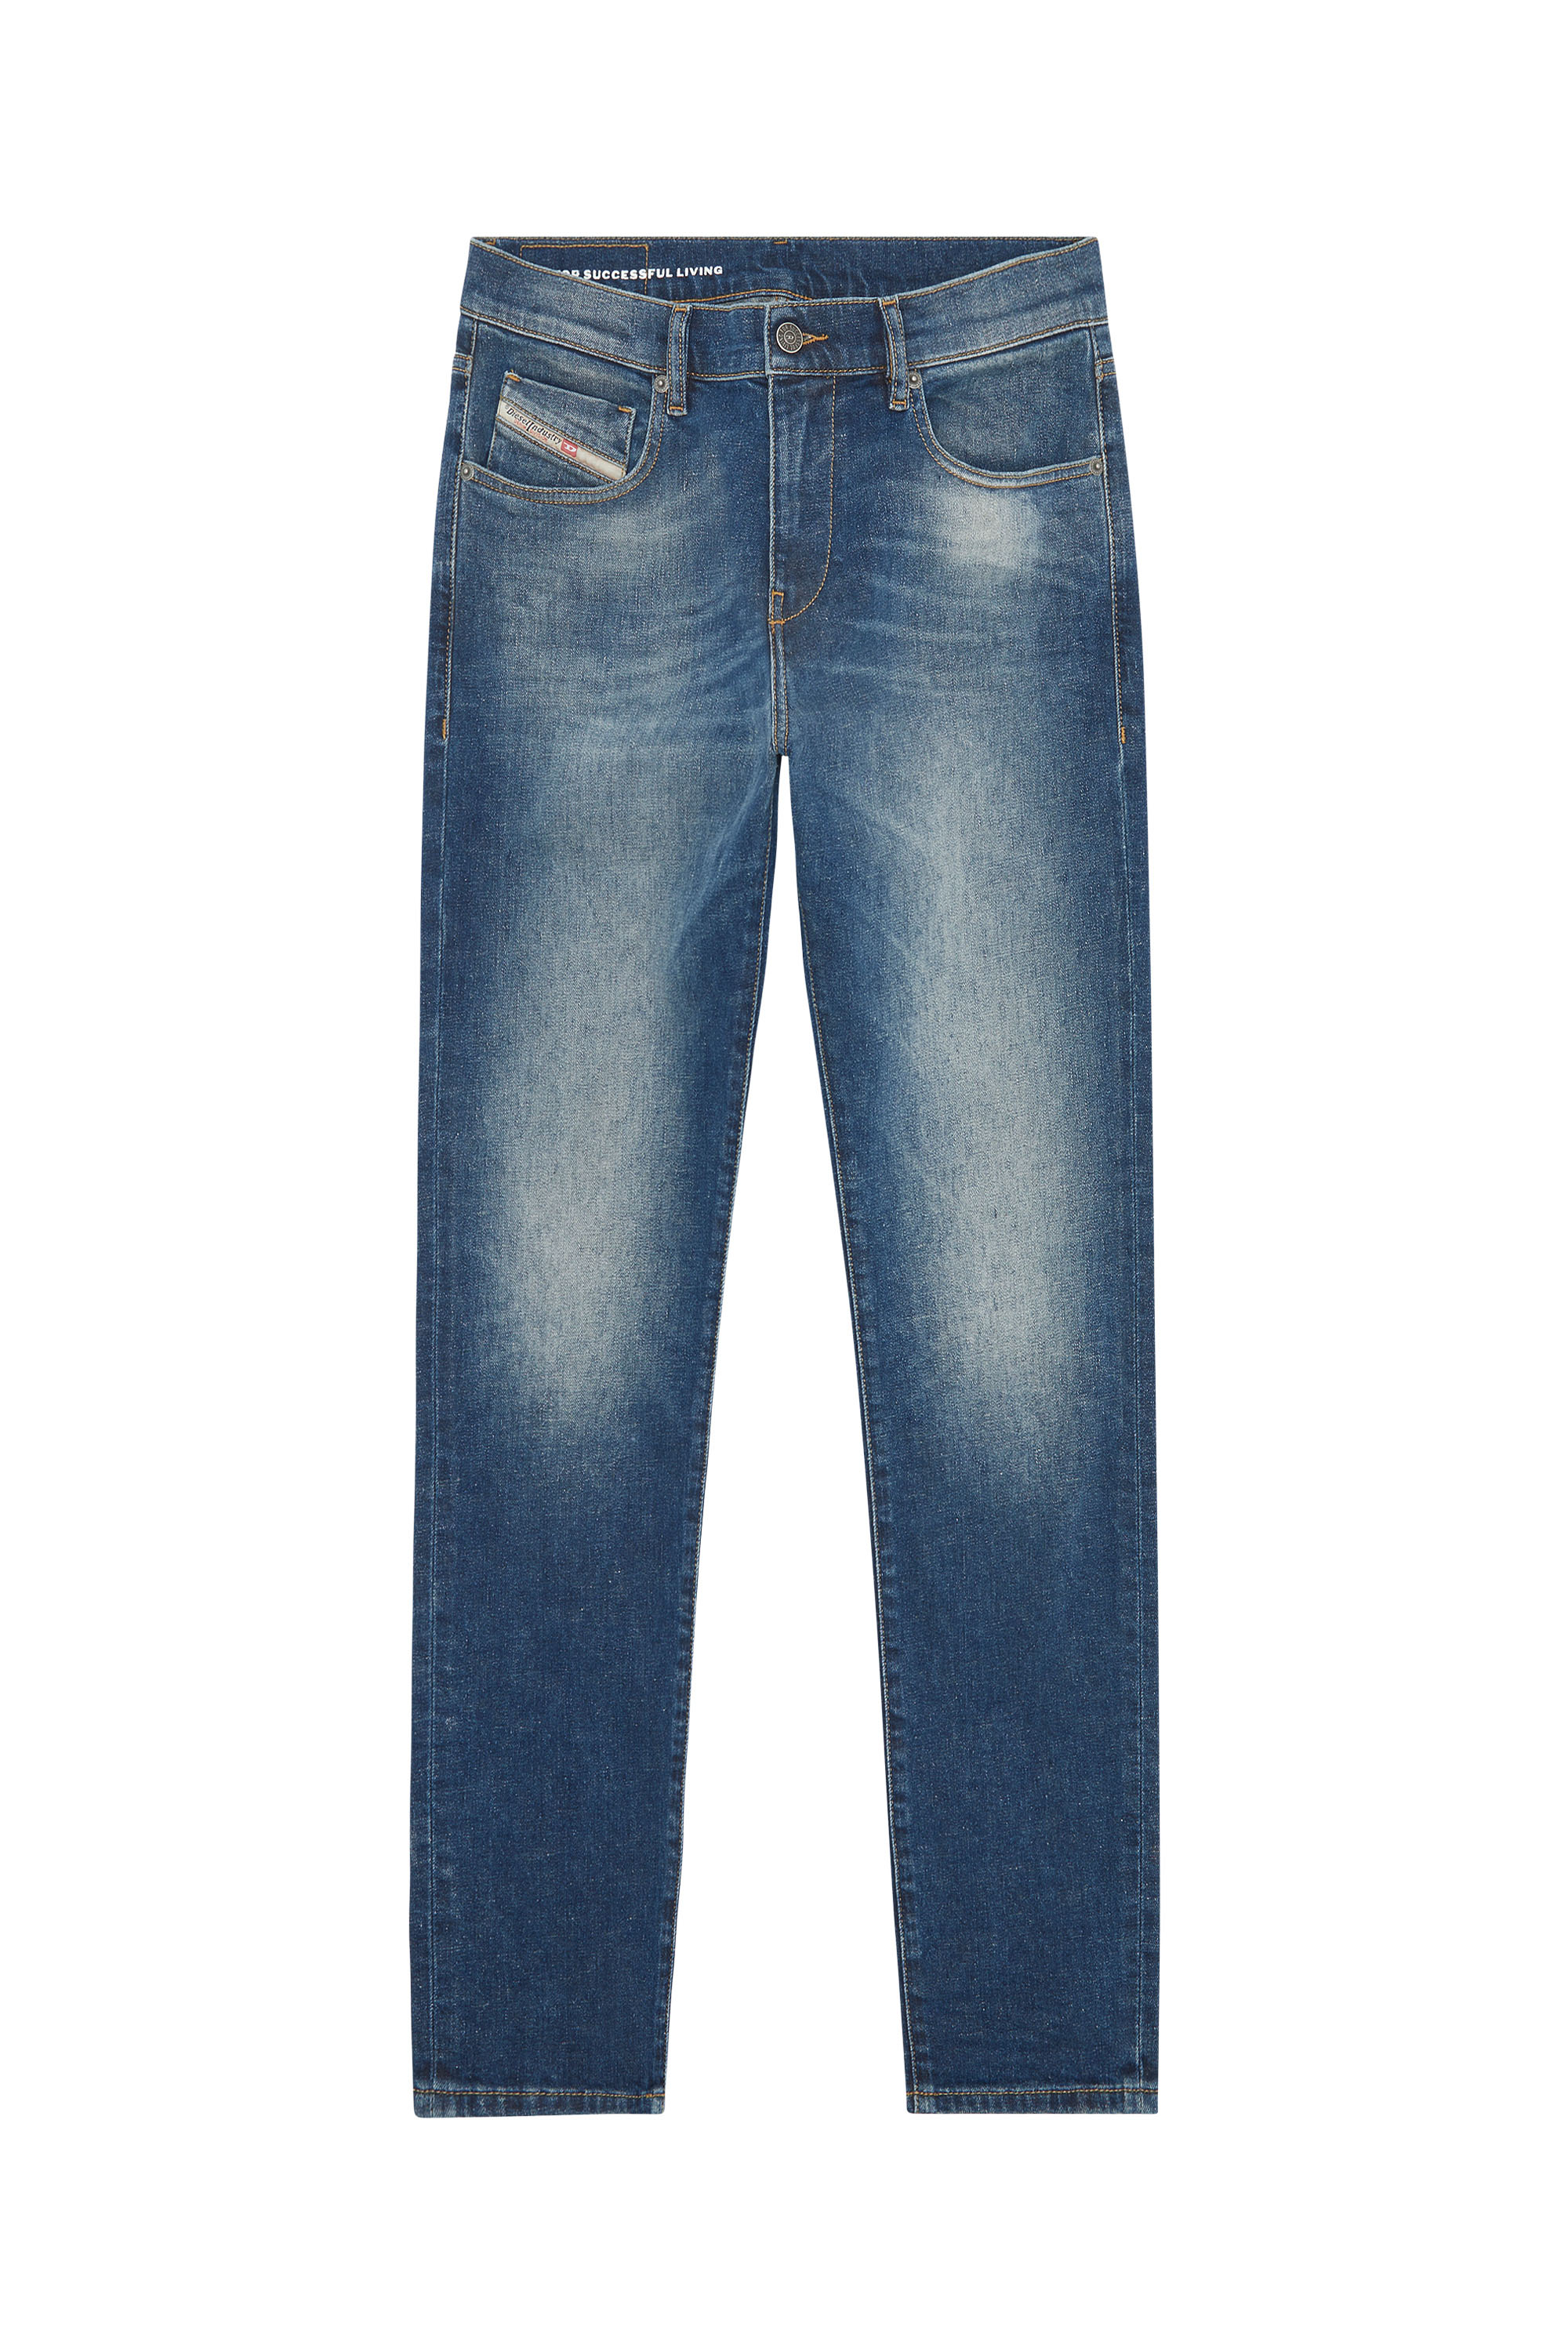 Diesel - Slim Jeans 2019 D-Strukt 09F39,  - Image 5